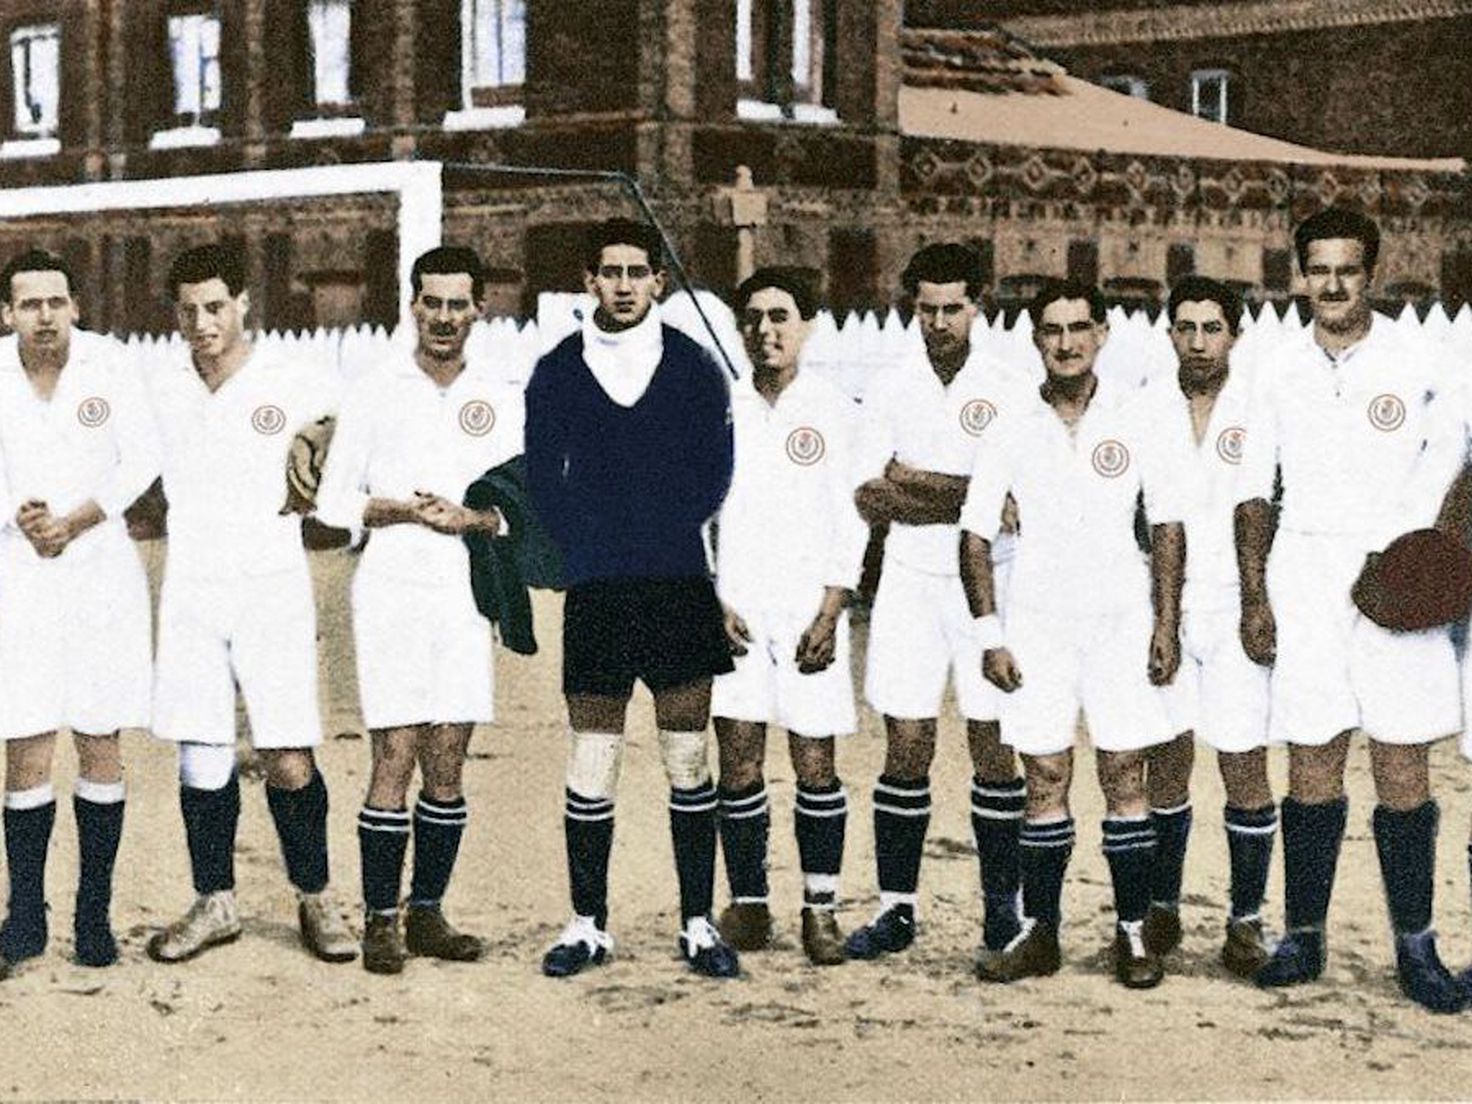 Câu lạc bộ Real Madrid được thành lập từ năm 1902